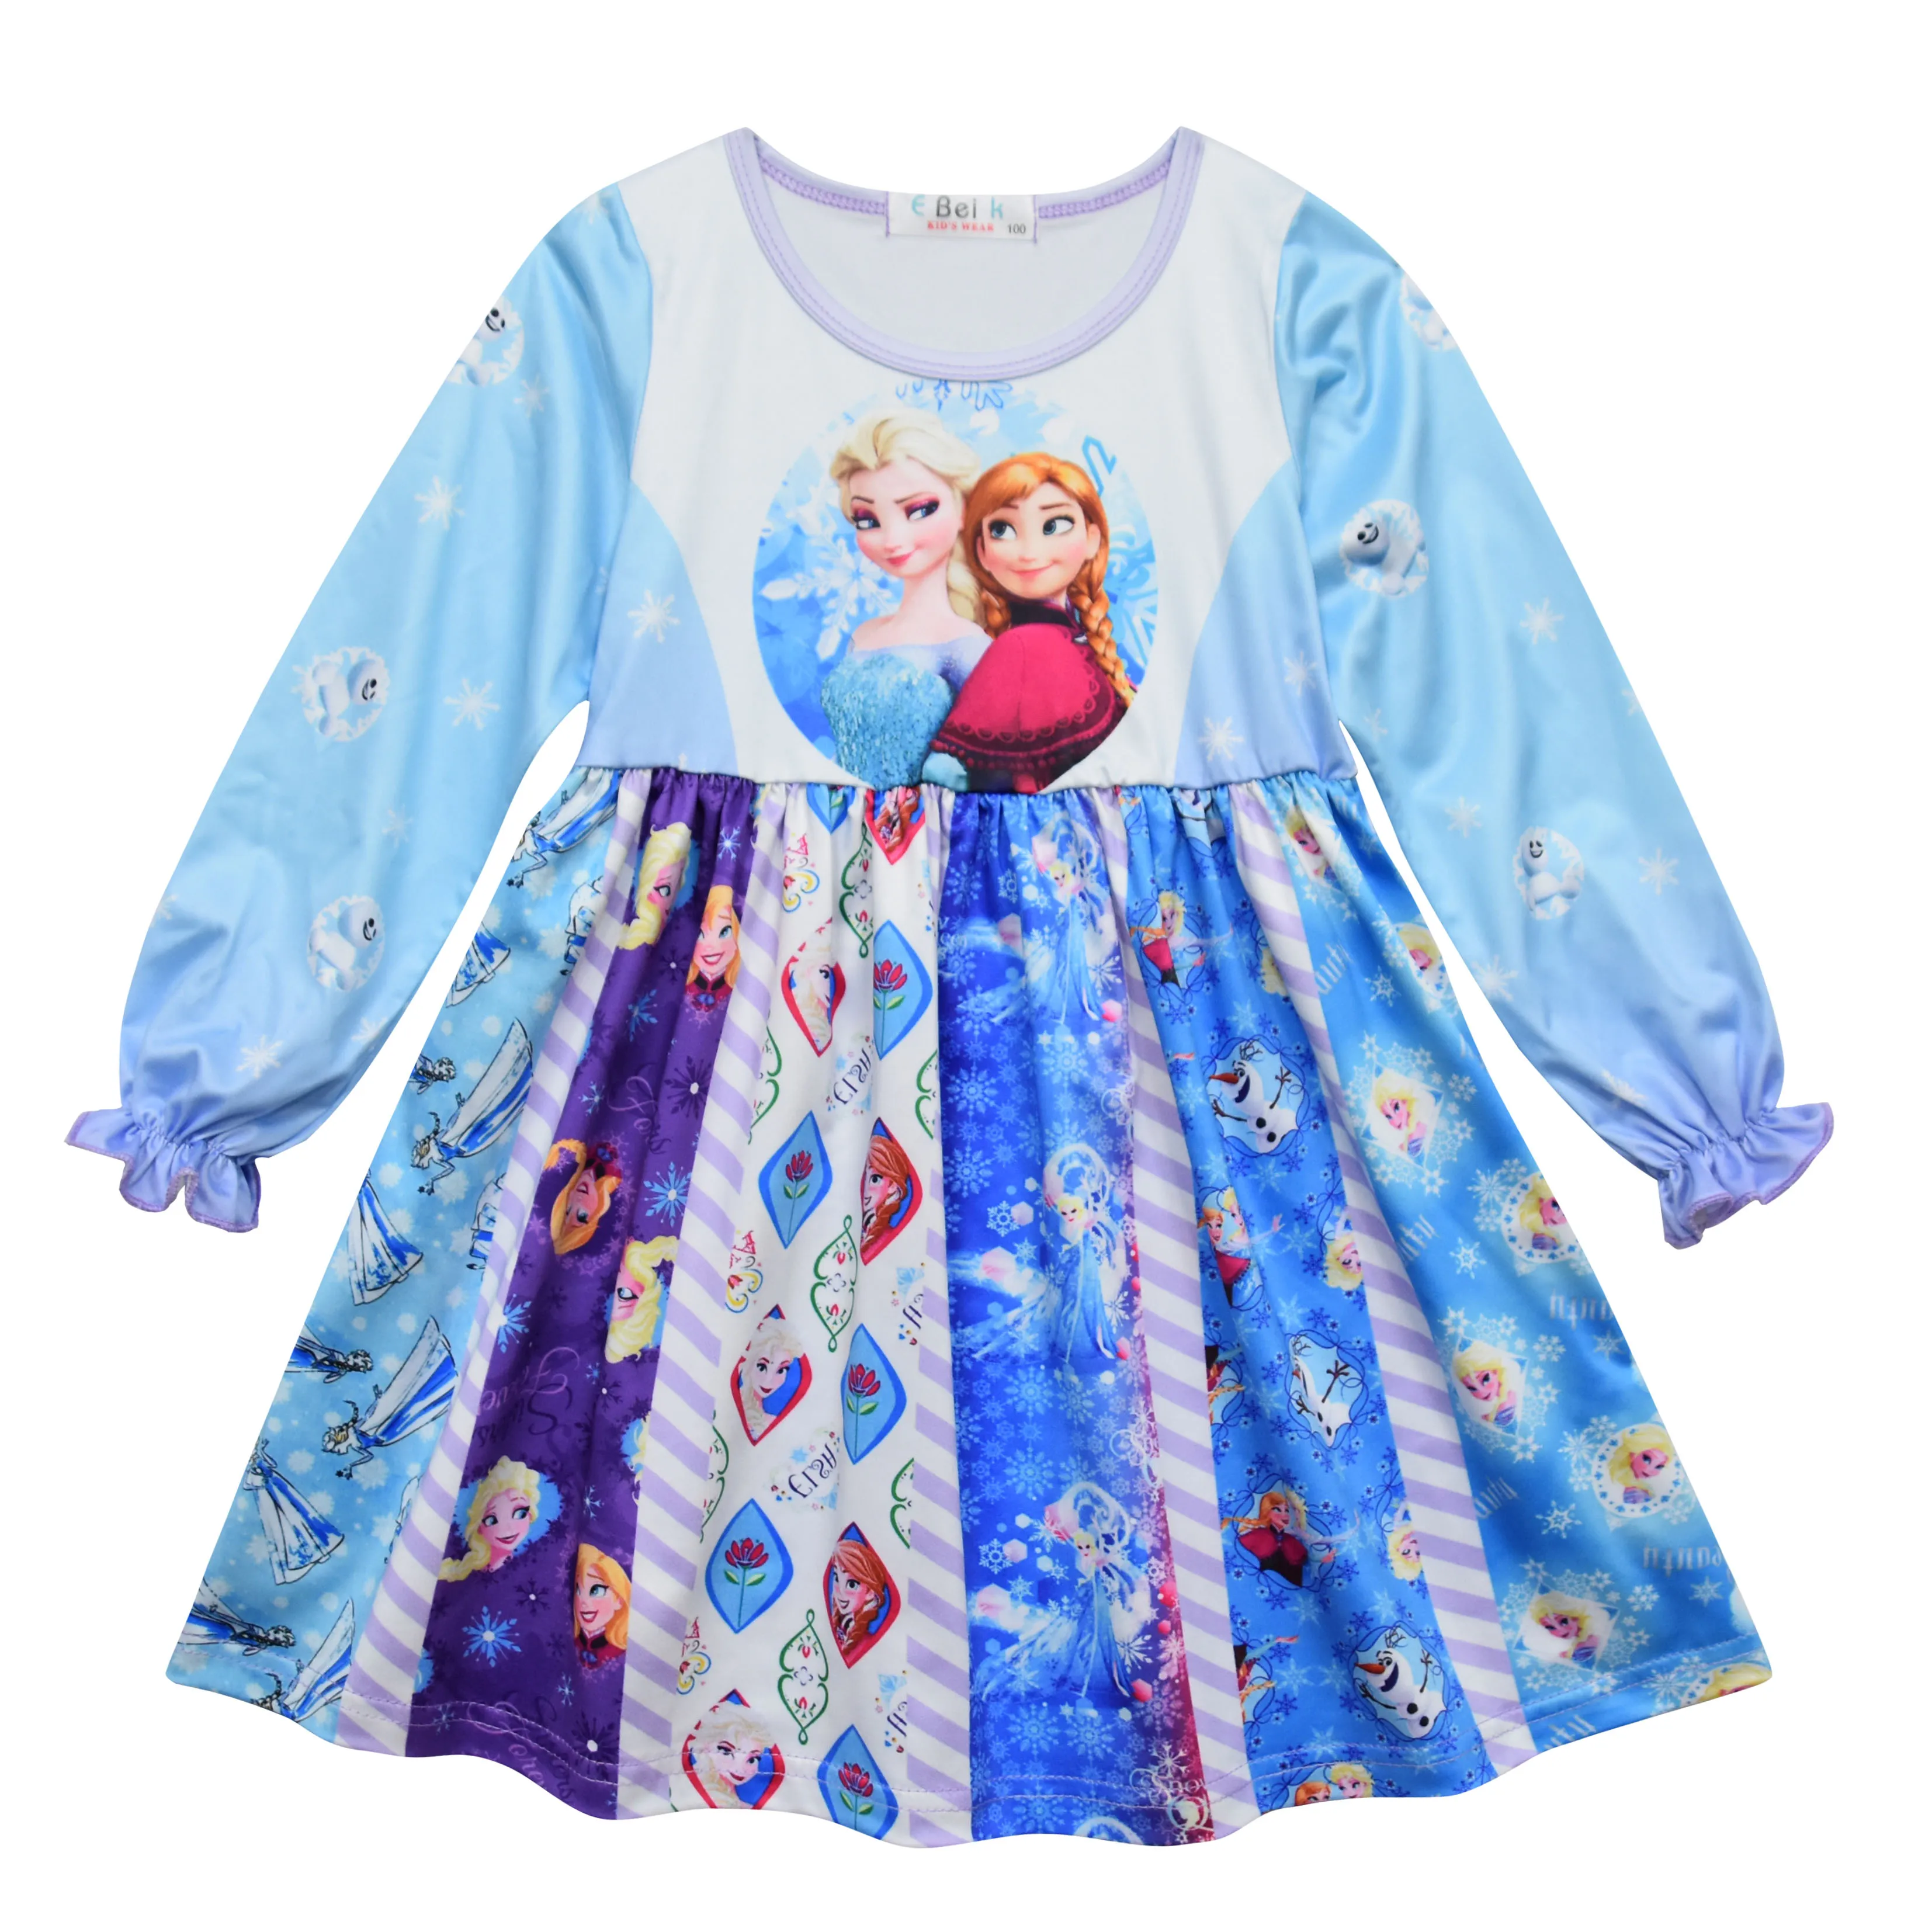 Одежда для детей платье Снежной королевы с длинными рукавами и героями мультфильмов рождественское платье принцессы Анны и Эльзы